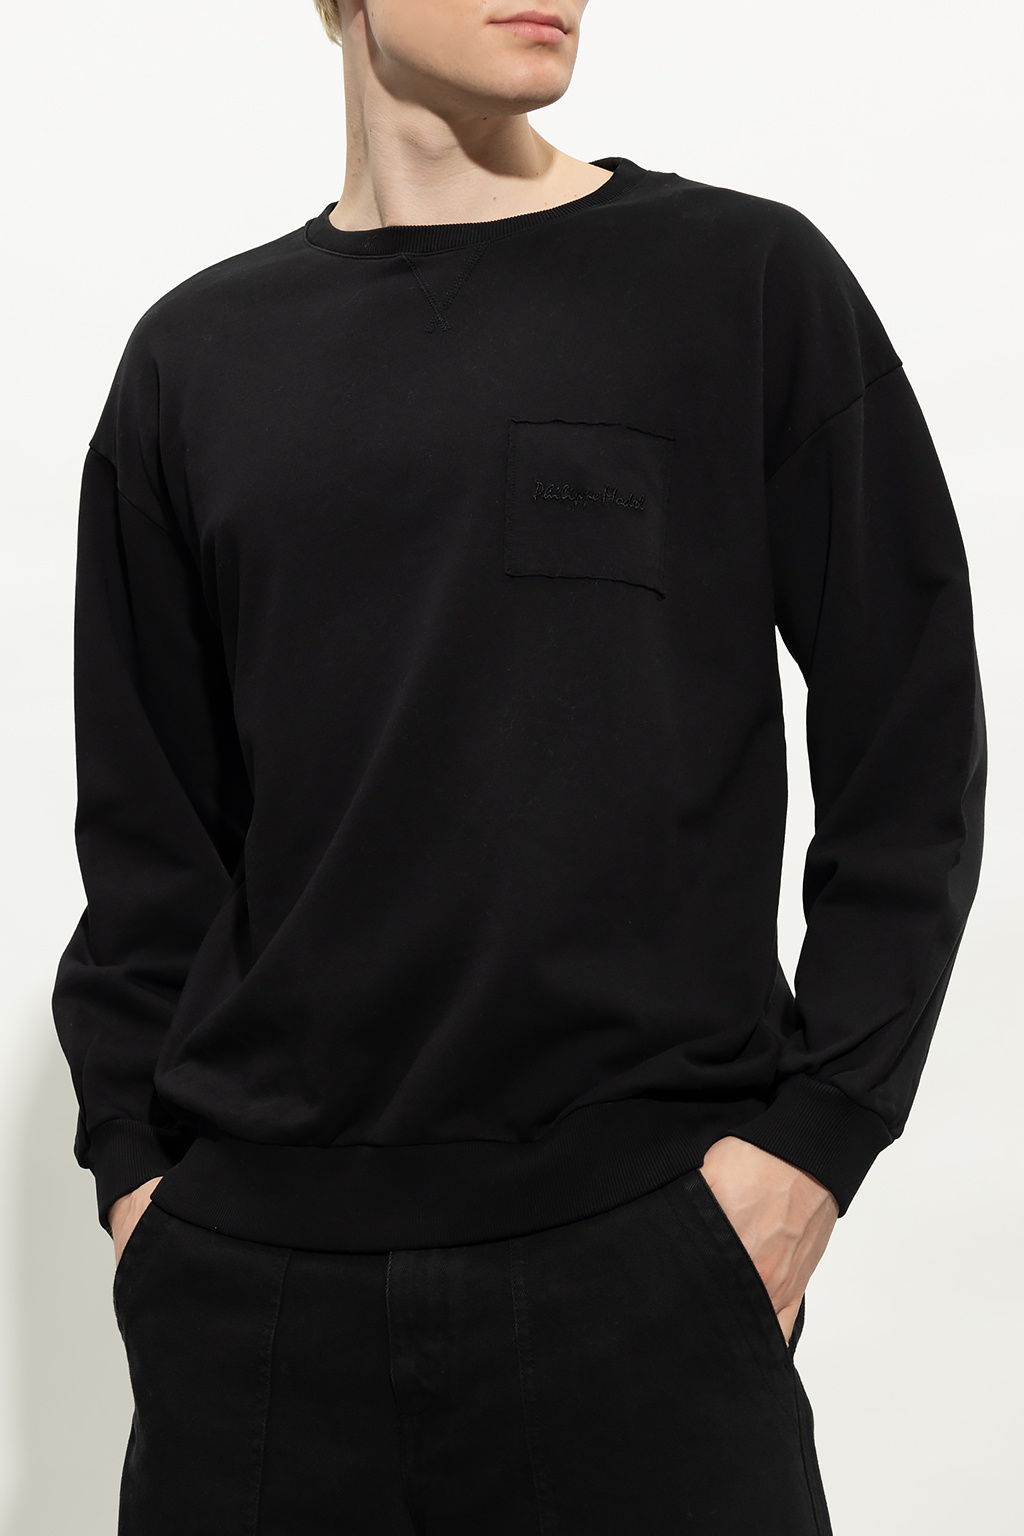 Philippe Model ‘Bellae’ BEDs sweatshirt